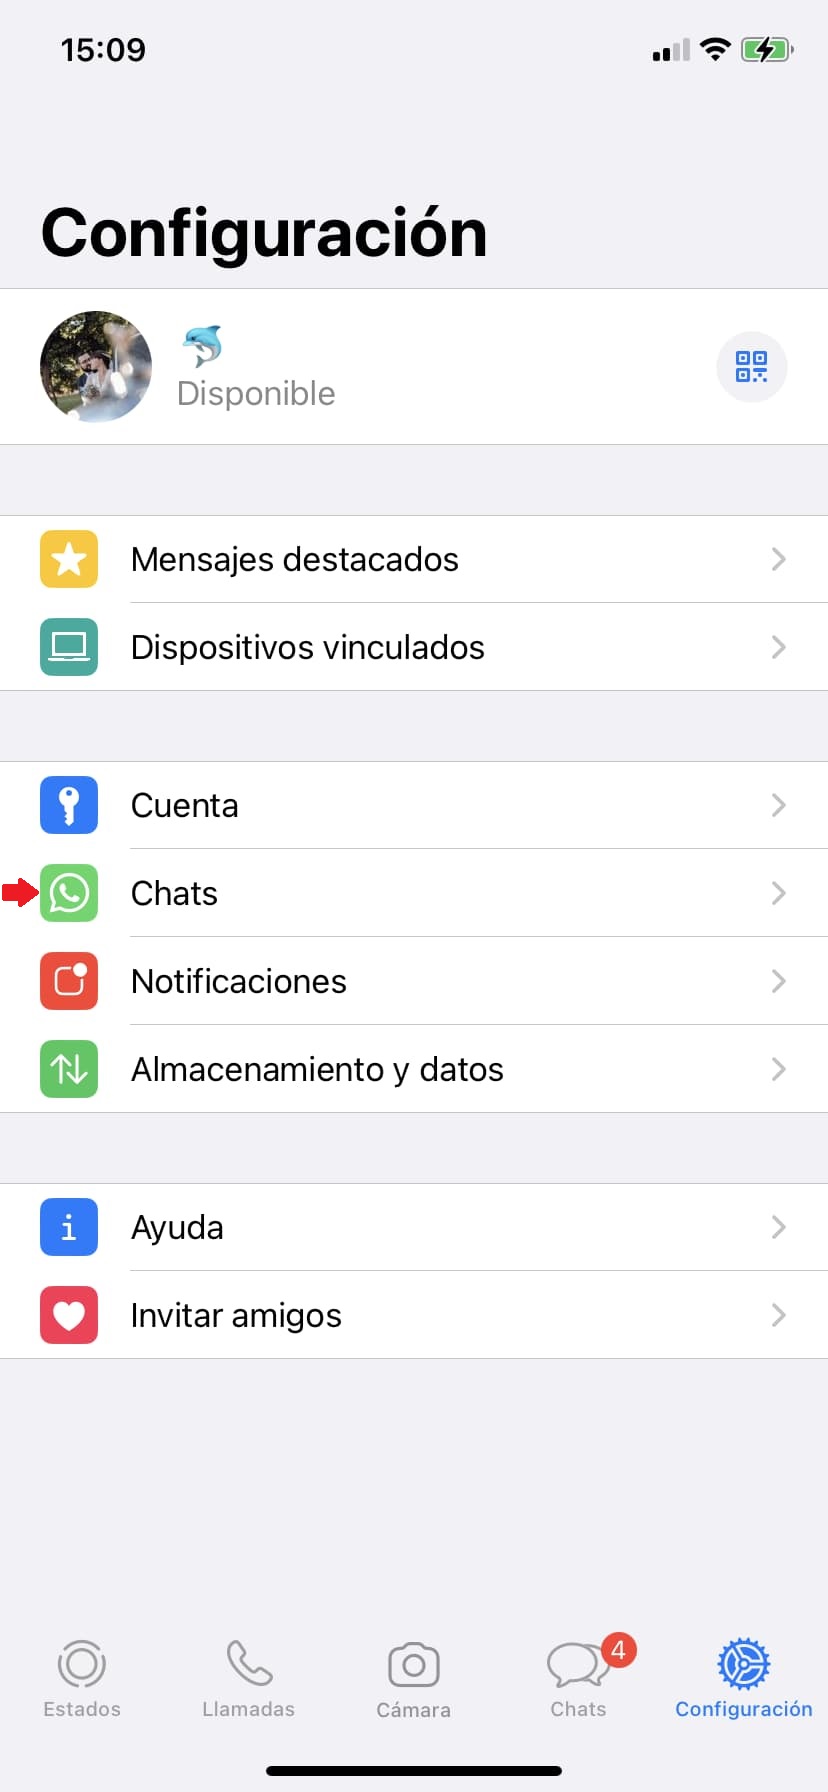 3 desactivar almacenamiento automatico de fotos de whatsapp en iPhone